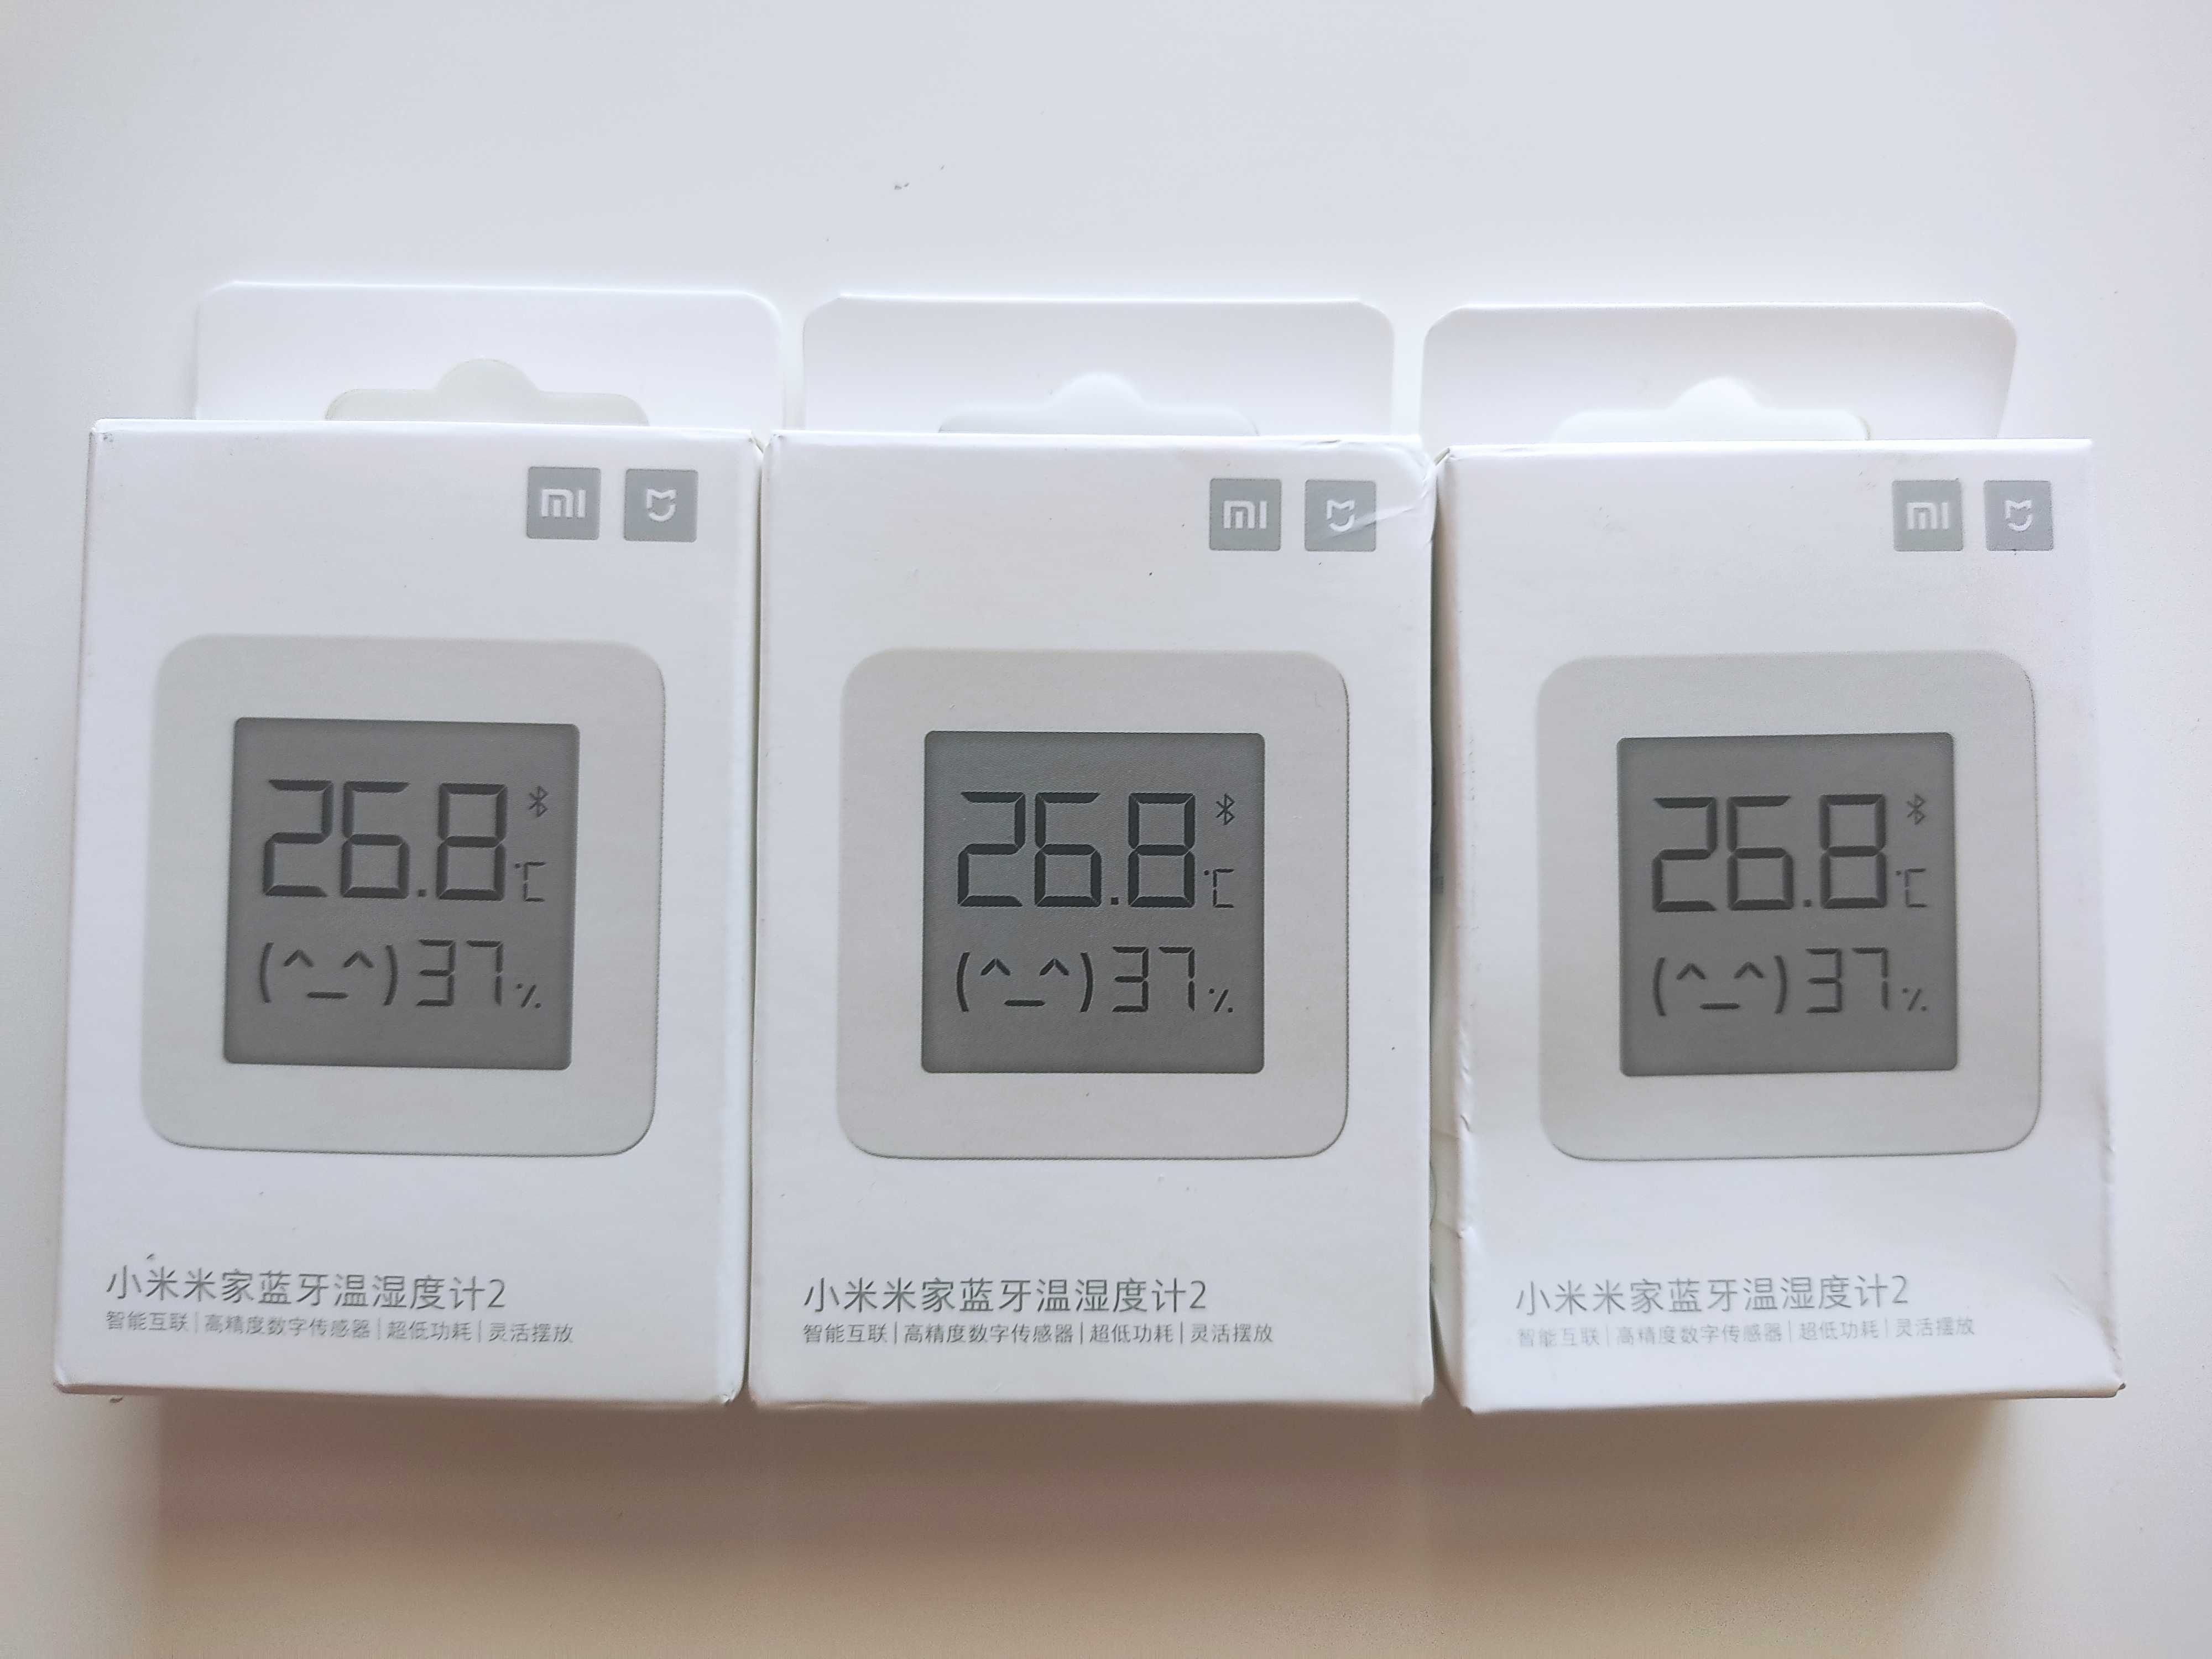 Xiaomi inteligentny termometr czujnik temperatury i wilgotności mijia